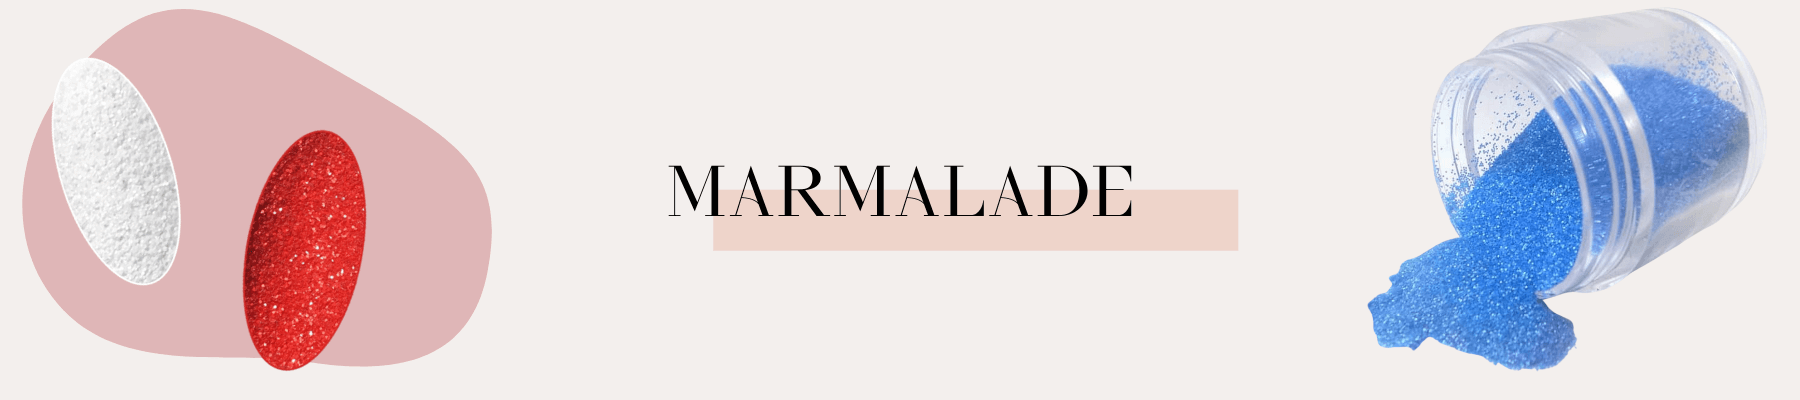 Marmalade, Nail Art